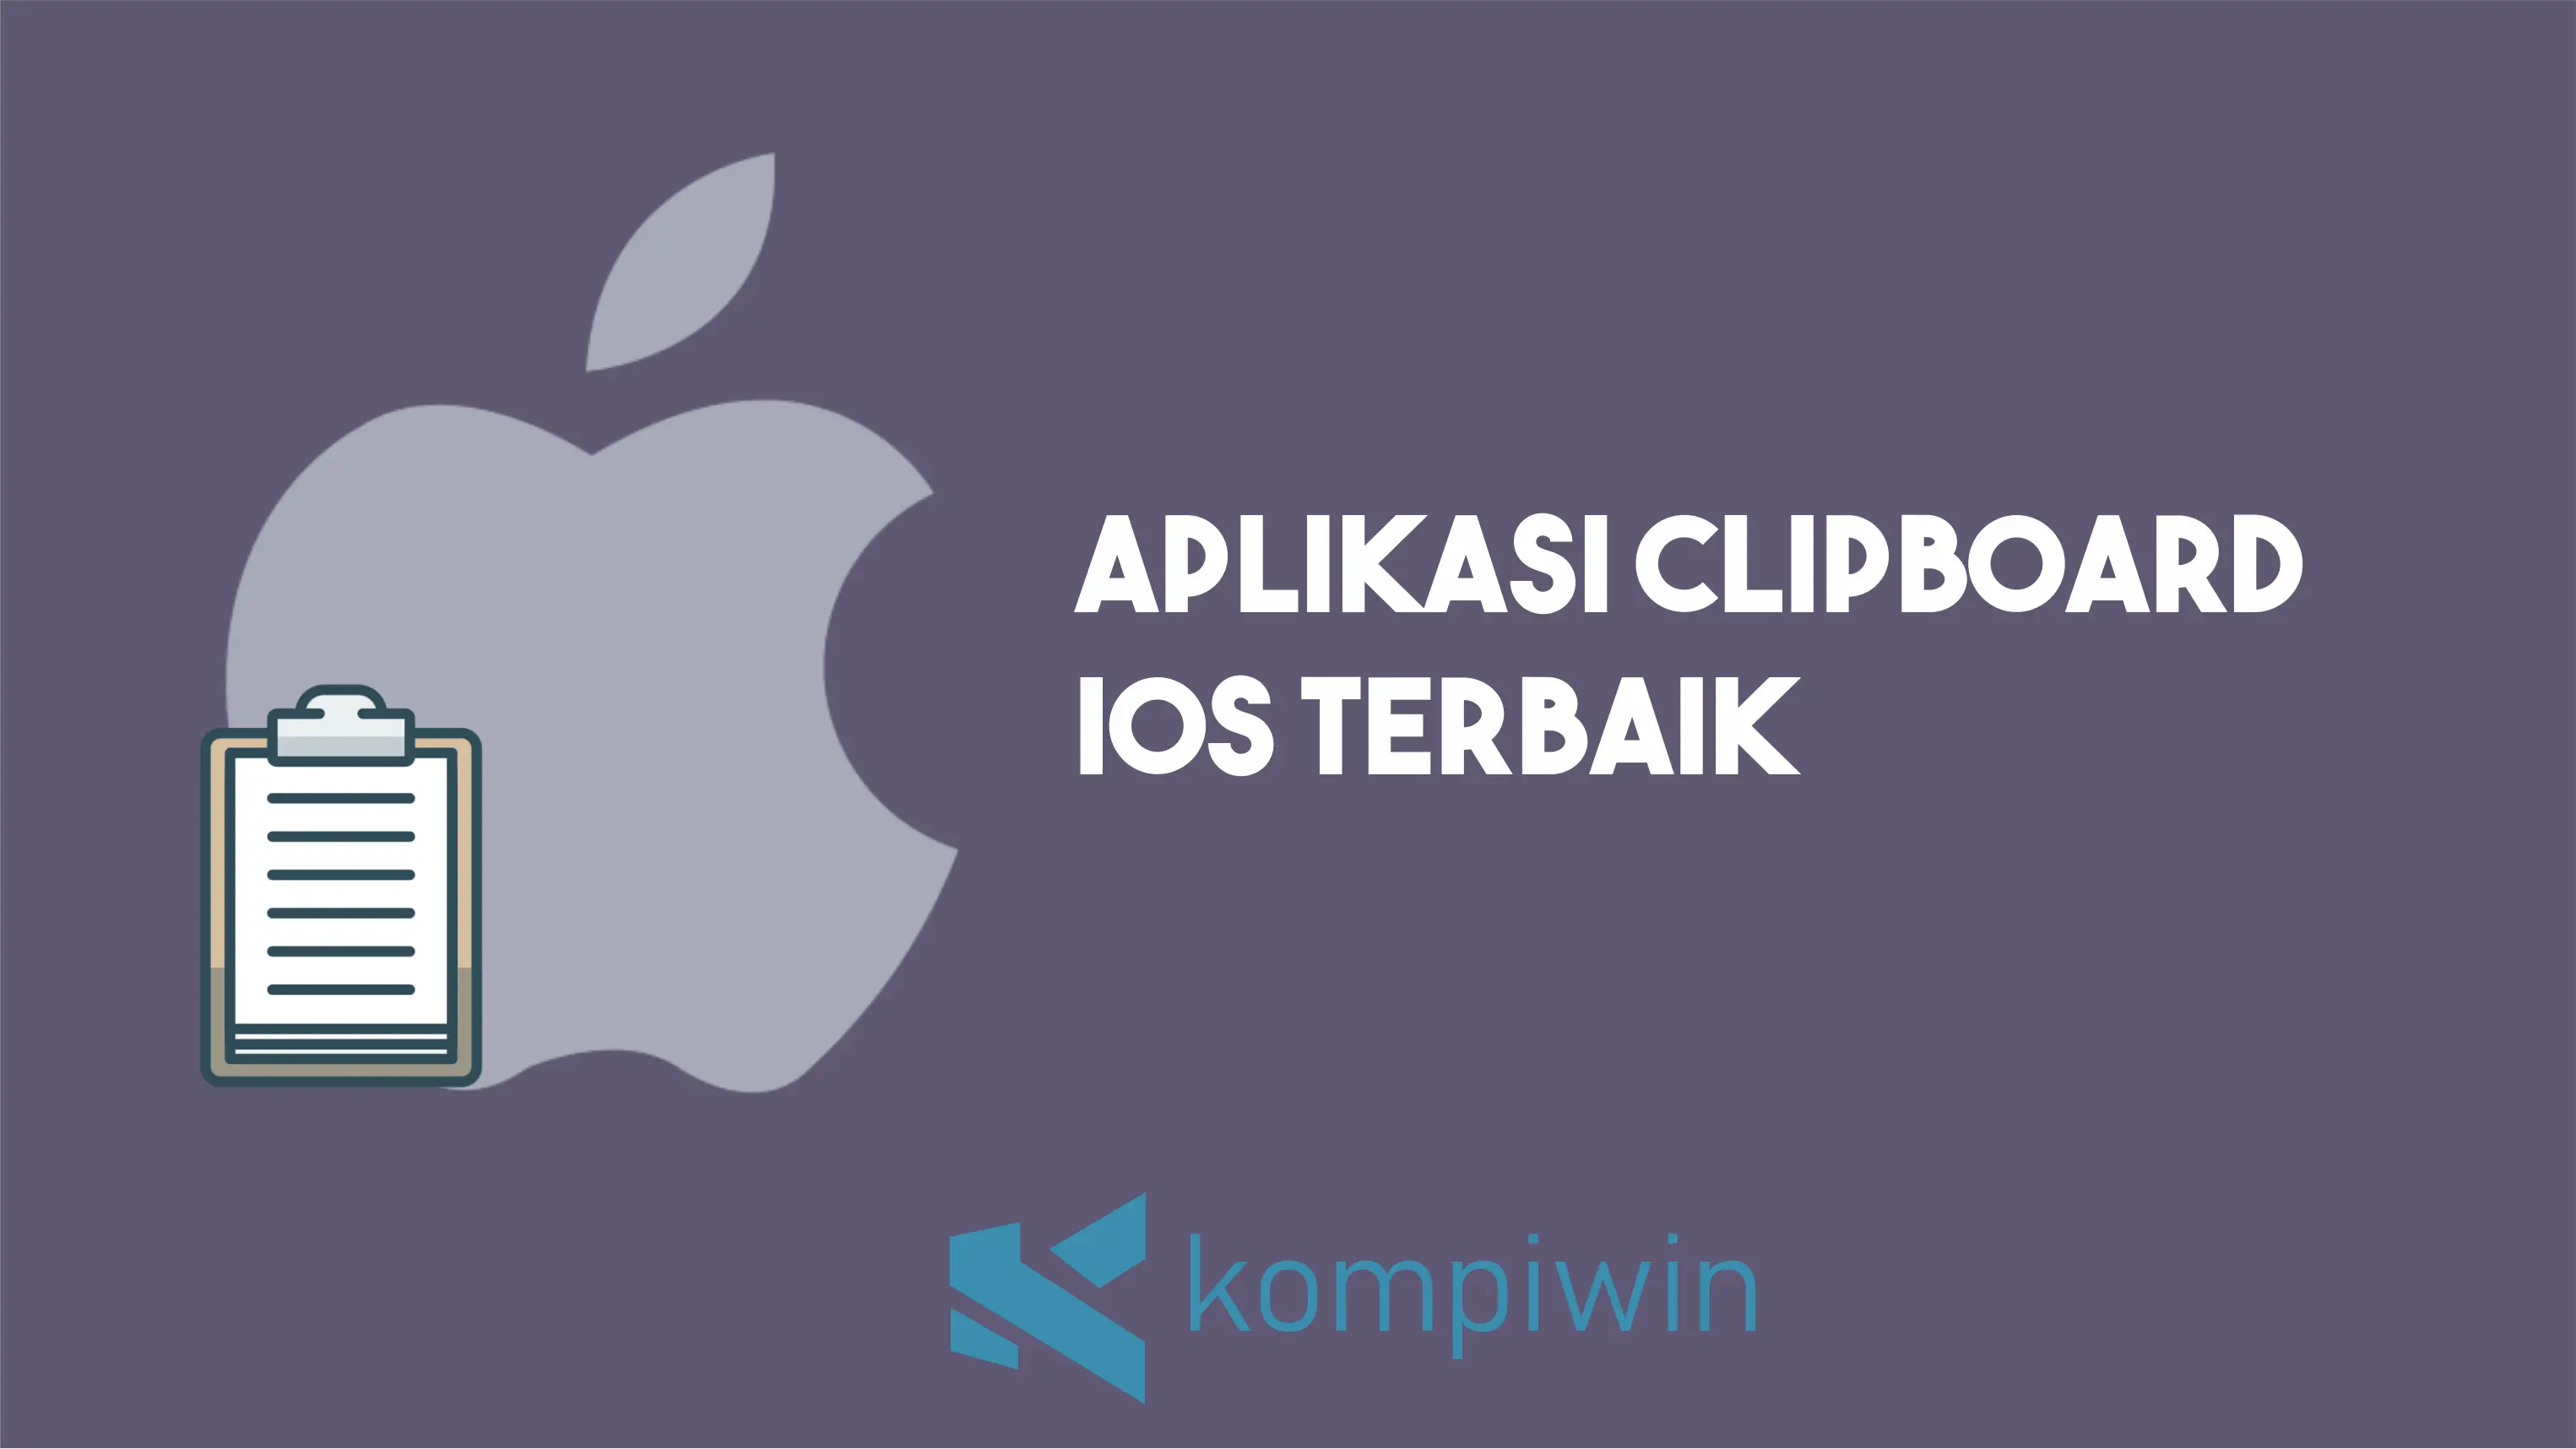 Aplikasi Clipboard (Papan Klip) iOS Terbaik 3